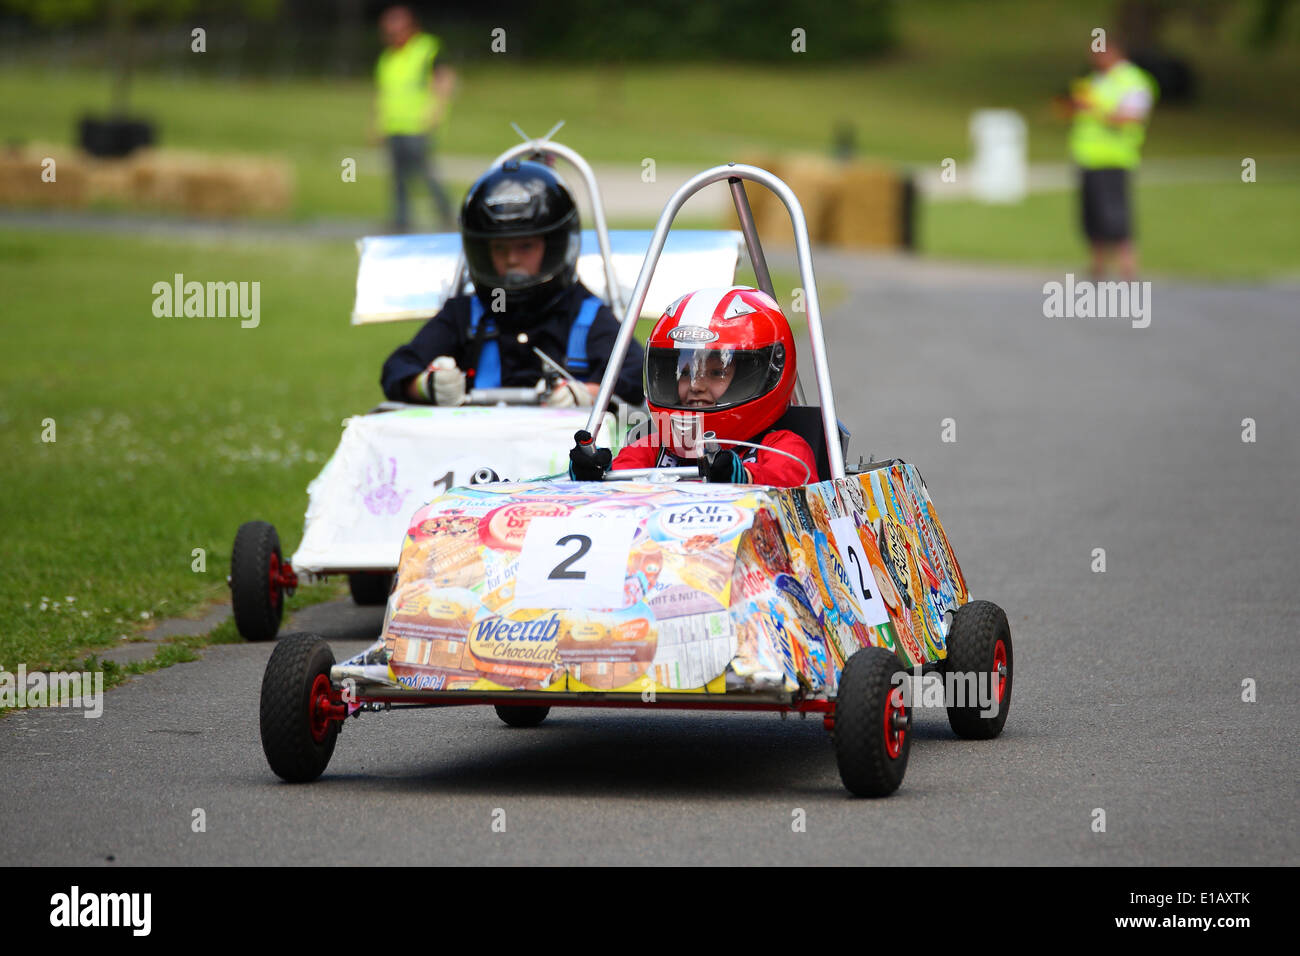 Una vettura compete nel Motorsport presso il Palazzo Sprint al Crystal Palace Park. Foto Stock